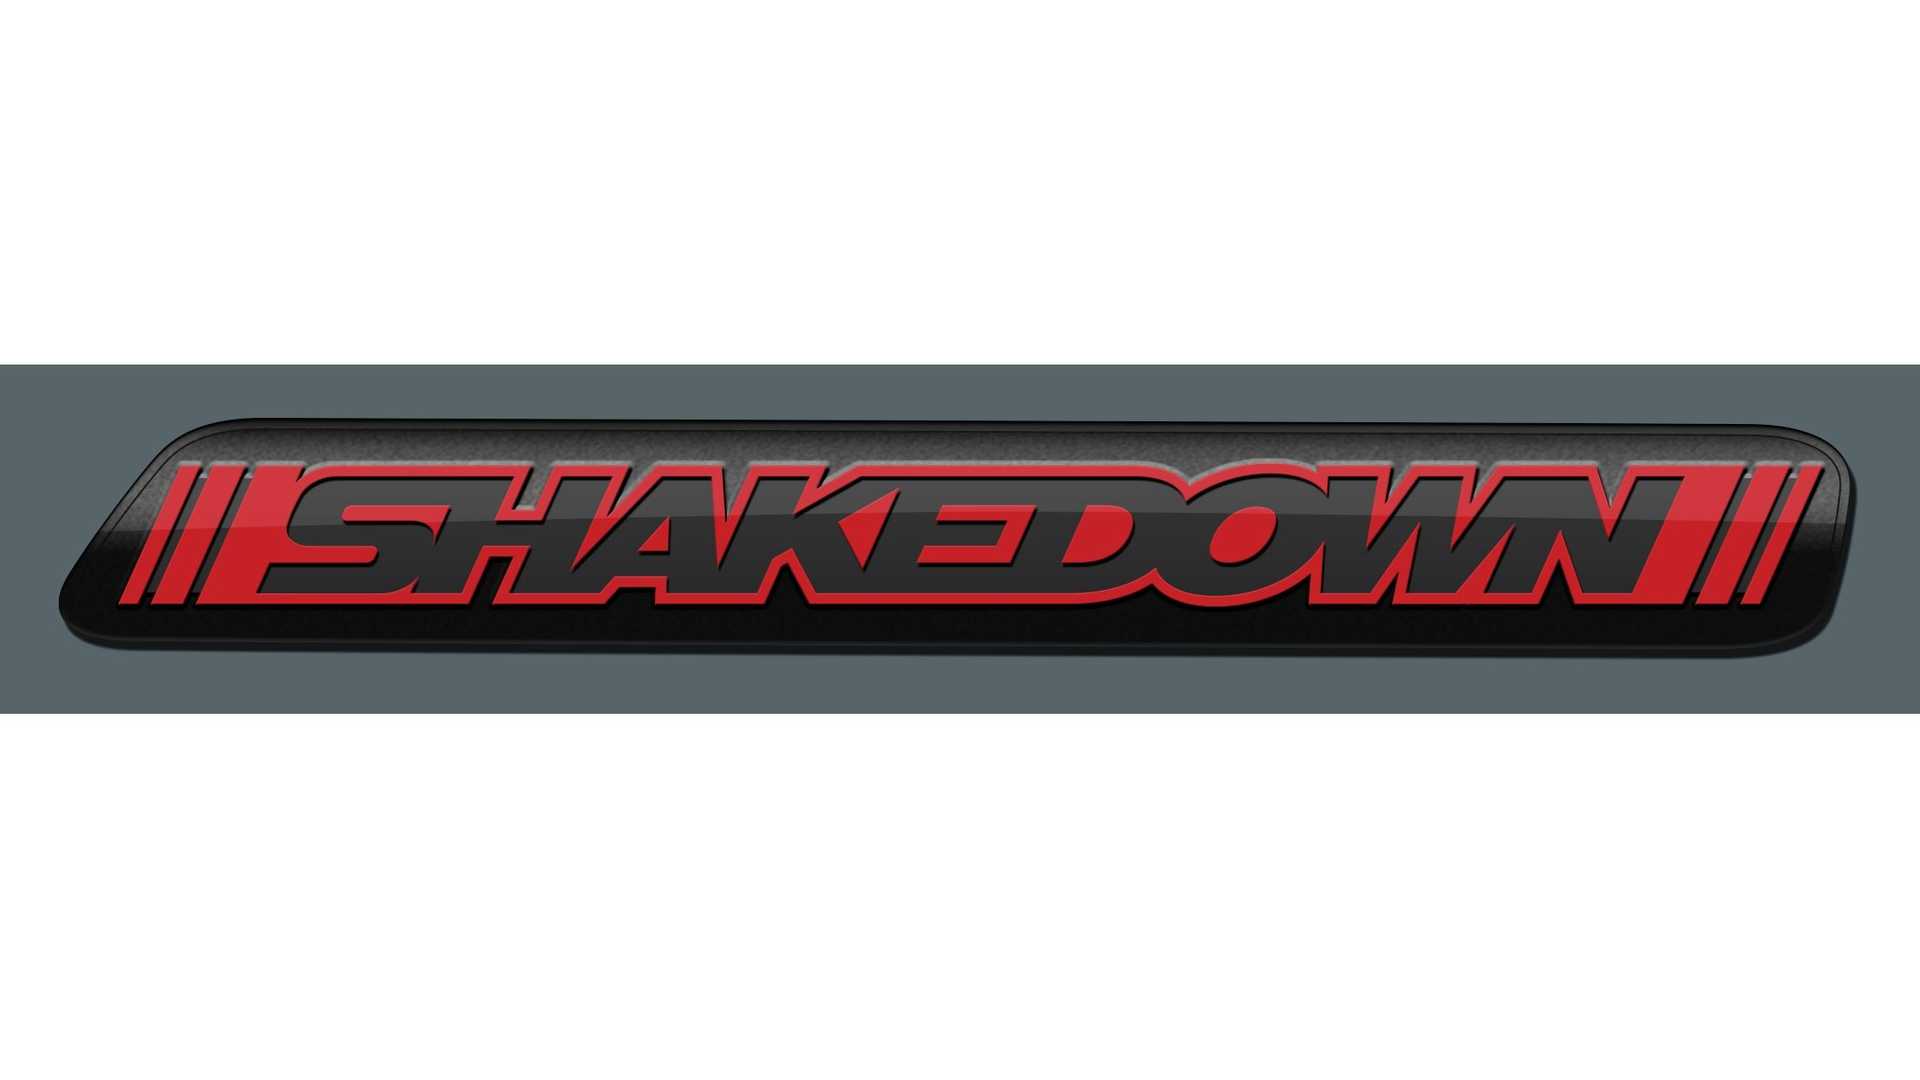 دودج تشالنجر 2023 تحصل على إصدار Shakedown تمهيداً لتوديع محركات الاحتراق الداخلي 6